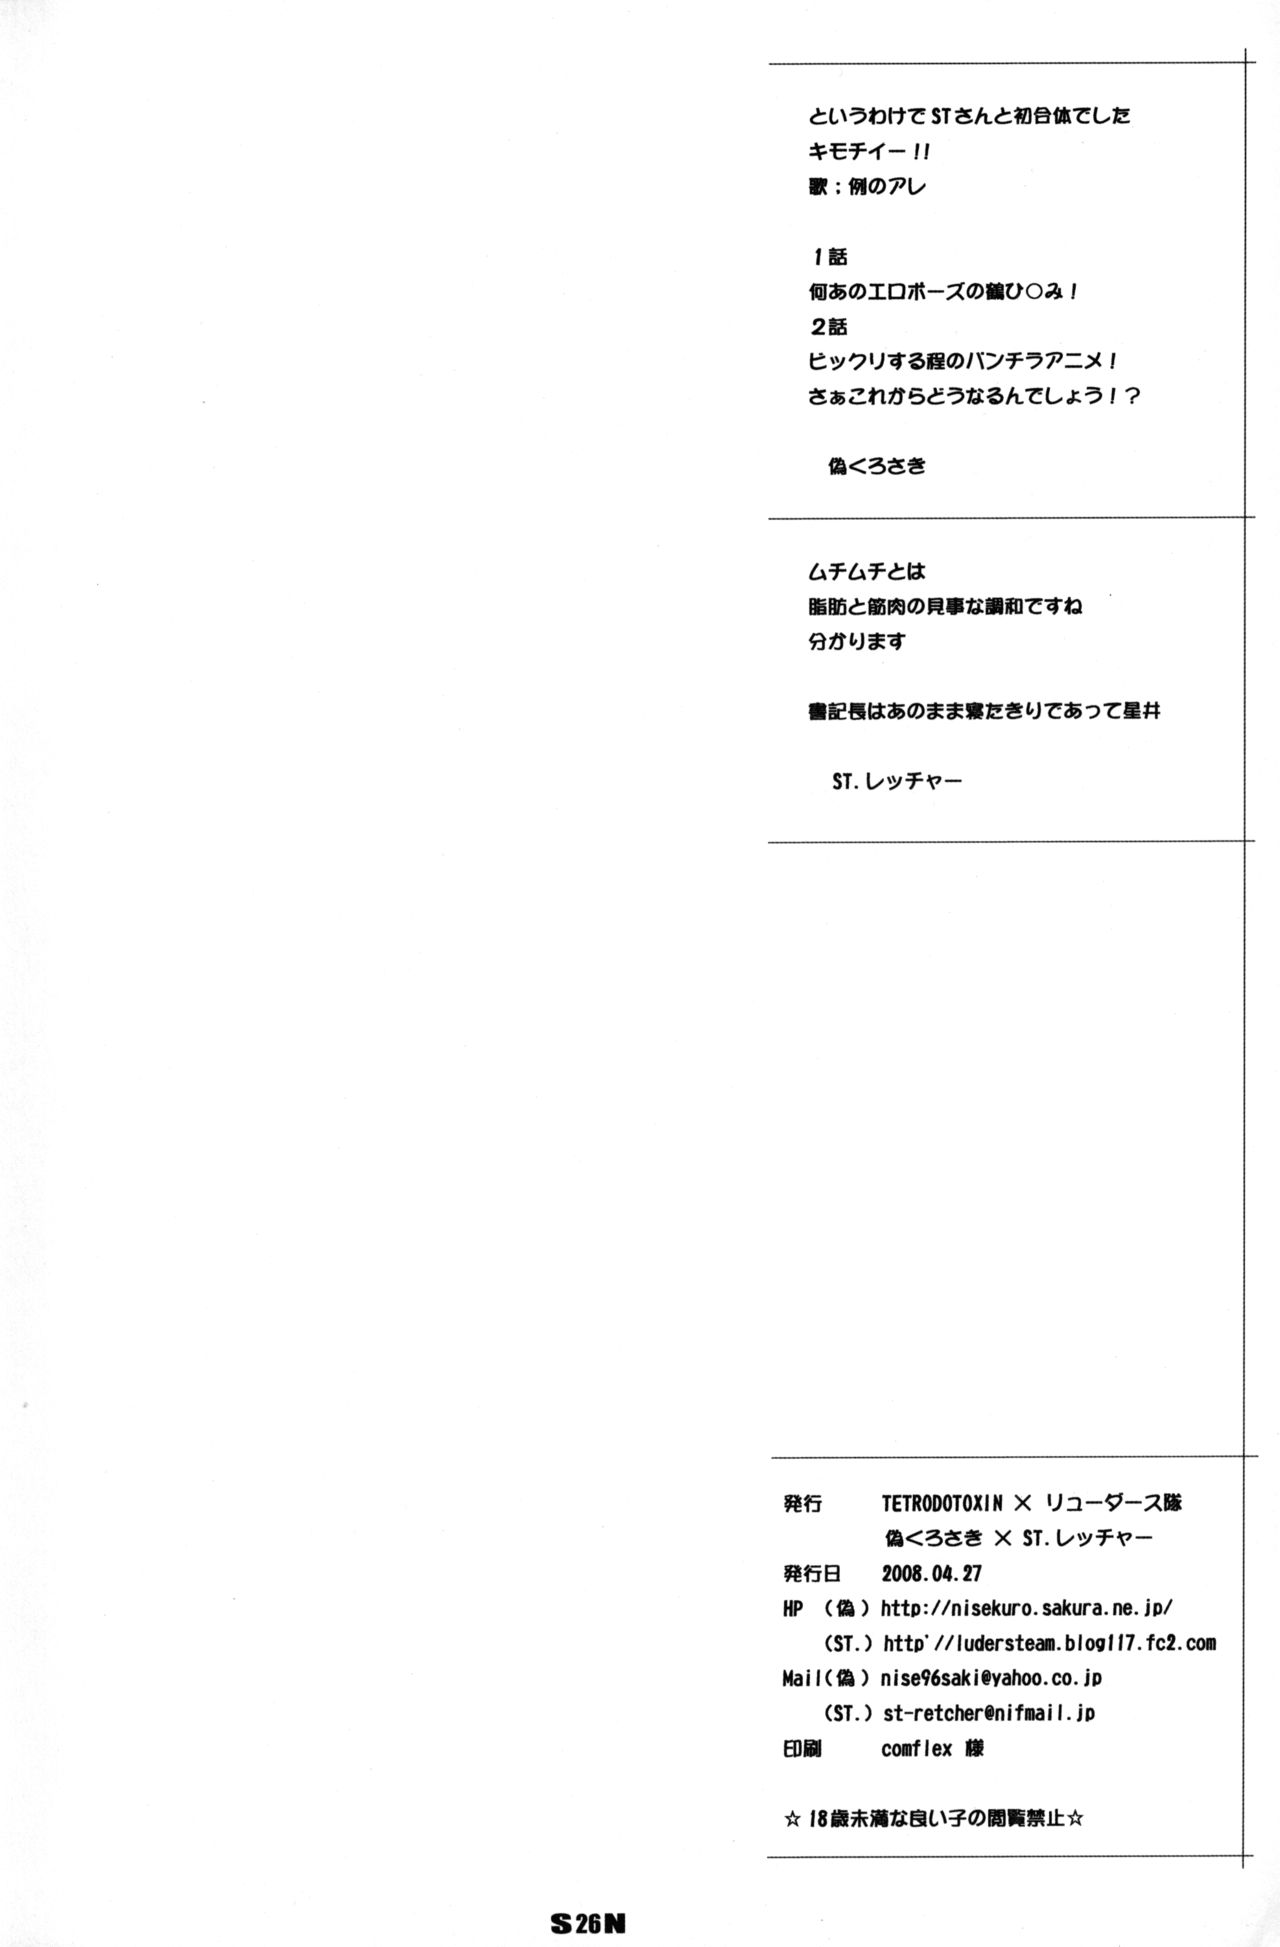 (COMIC1☆2) [TETRODOTOXIN, リューダース隊 (偽くろさき, ST.レッチャー)] ホロン部 (RD 潜脳調査室)